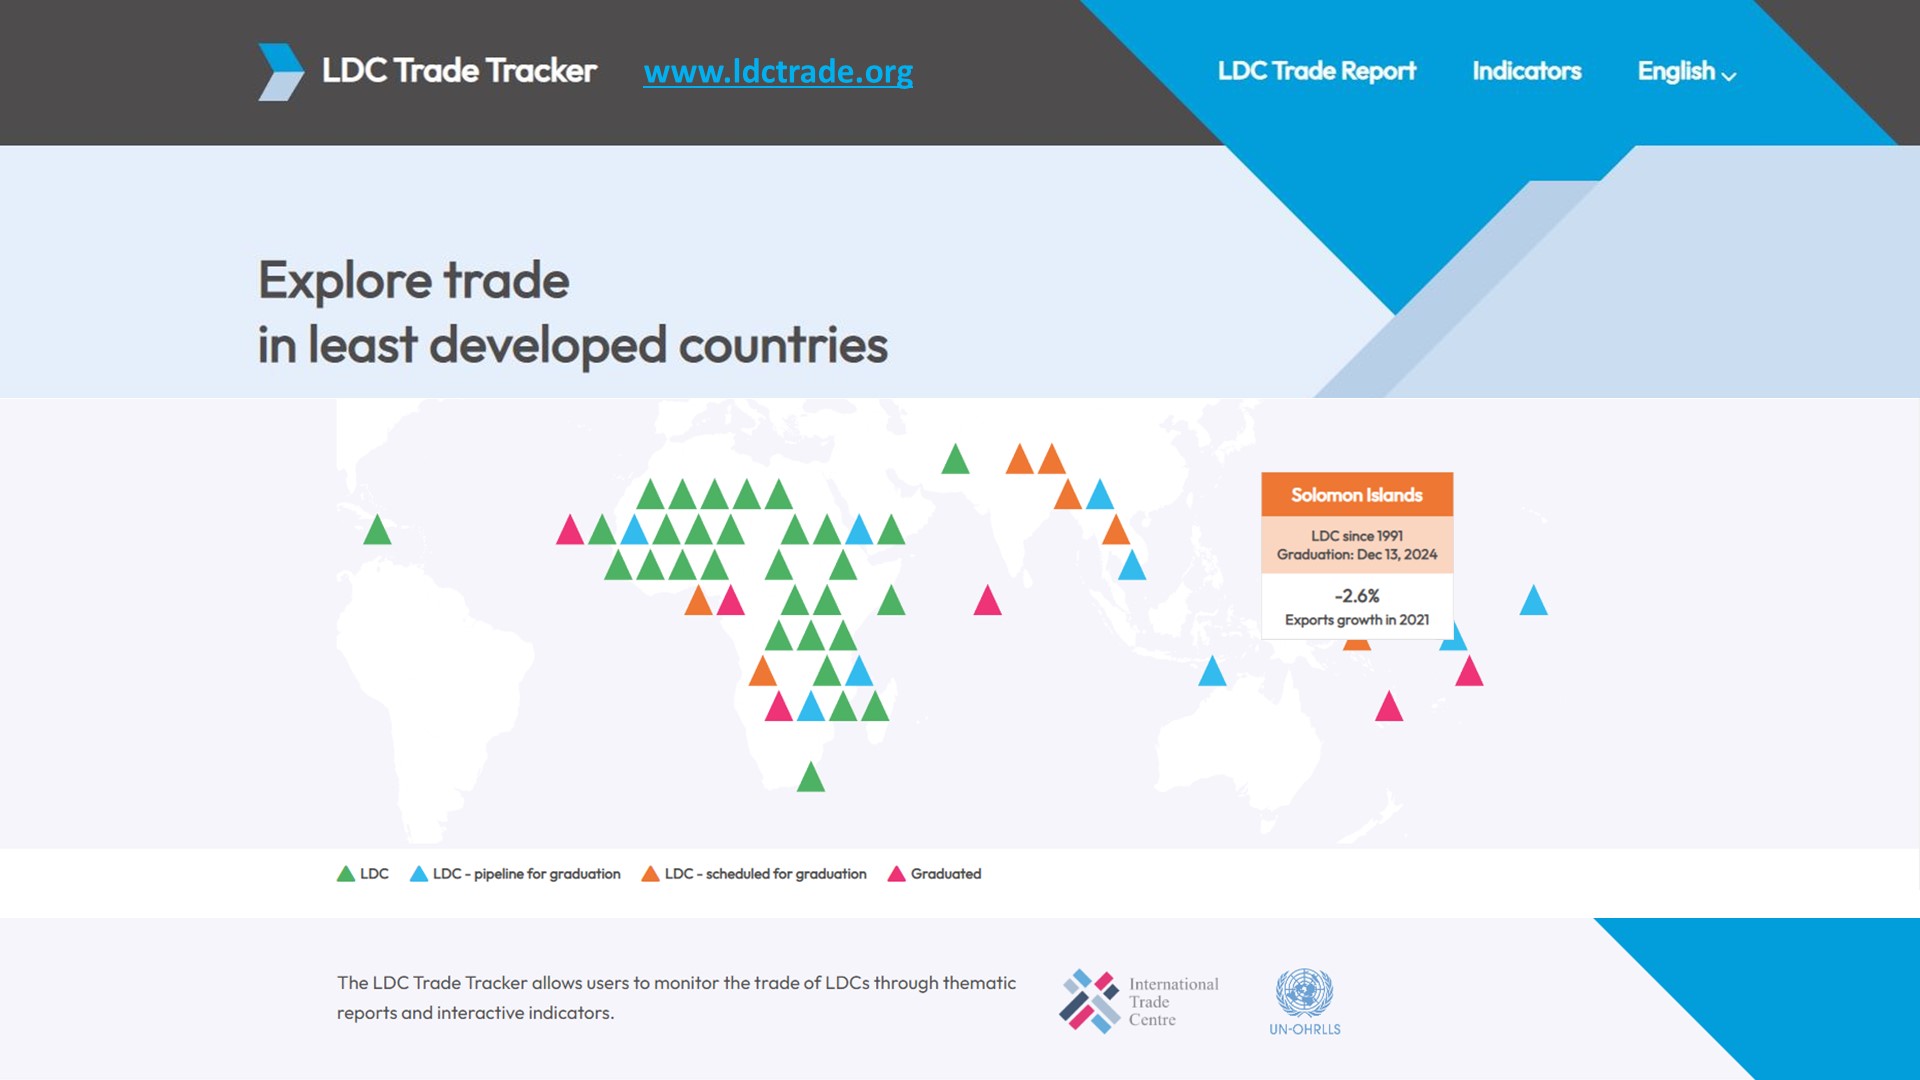 LDC Trade Tracker